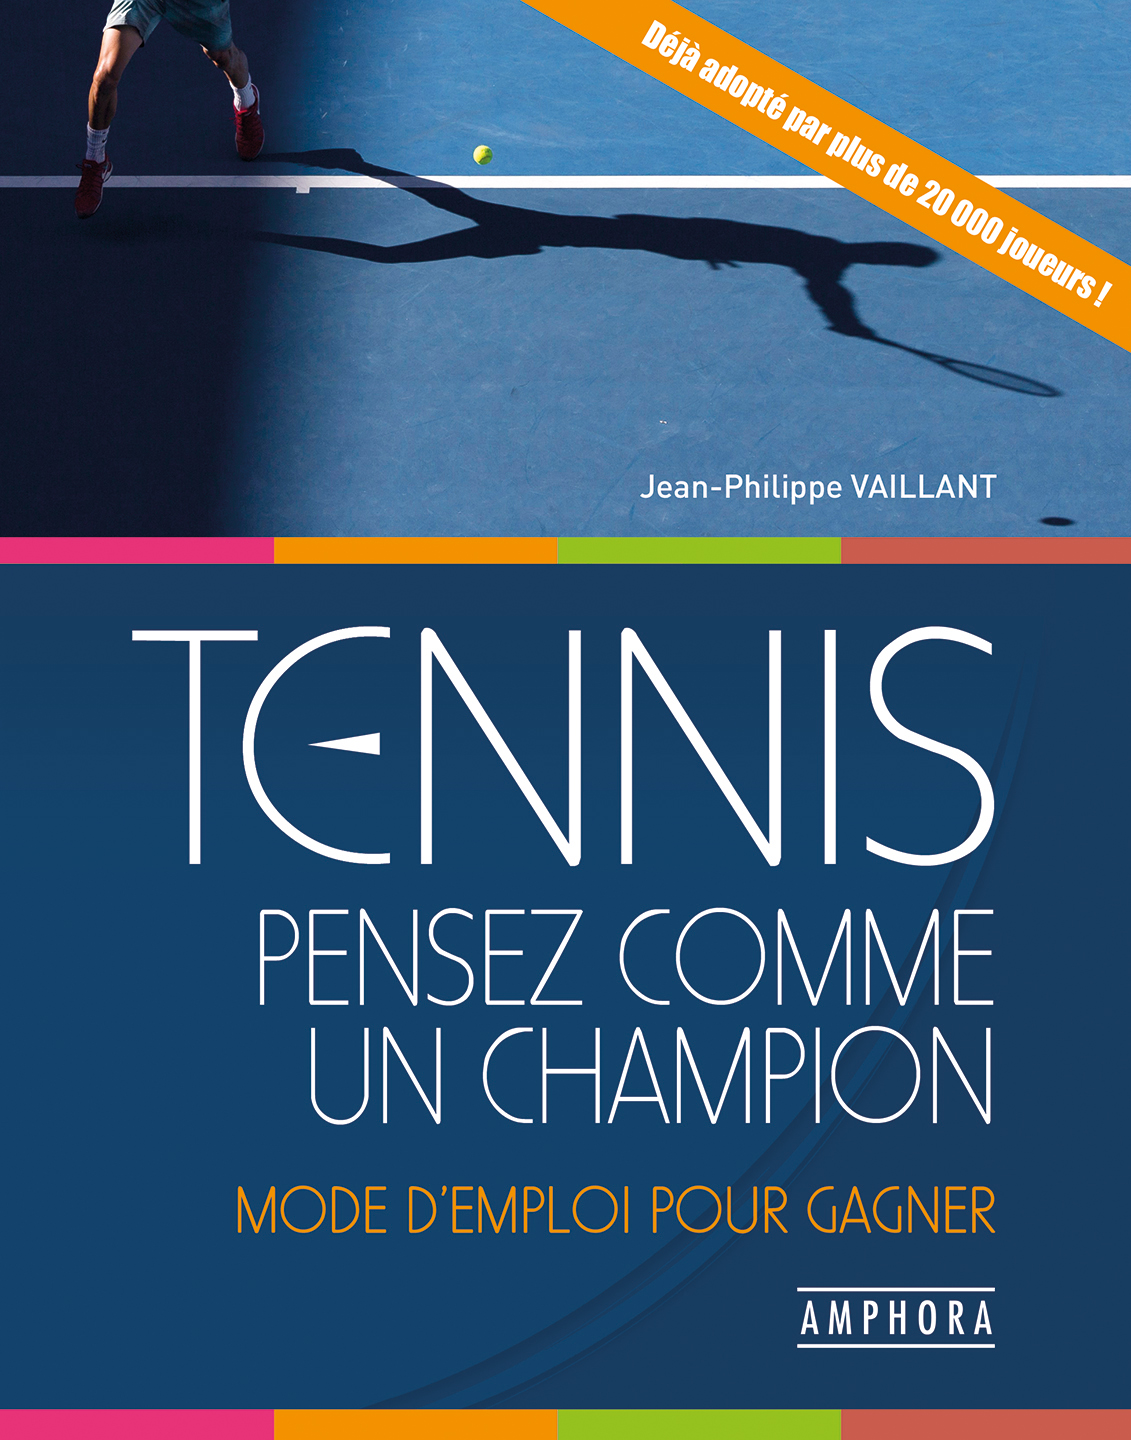 Livre Tennis - Quel joueur êtes-vous ? Amphora - Livres Tennis -  Accessoires - Tennis